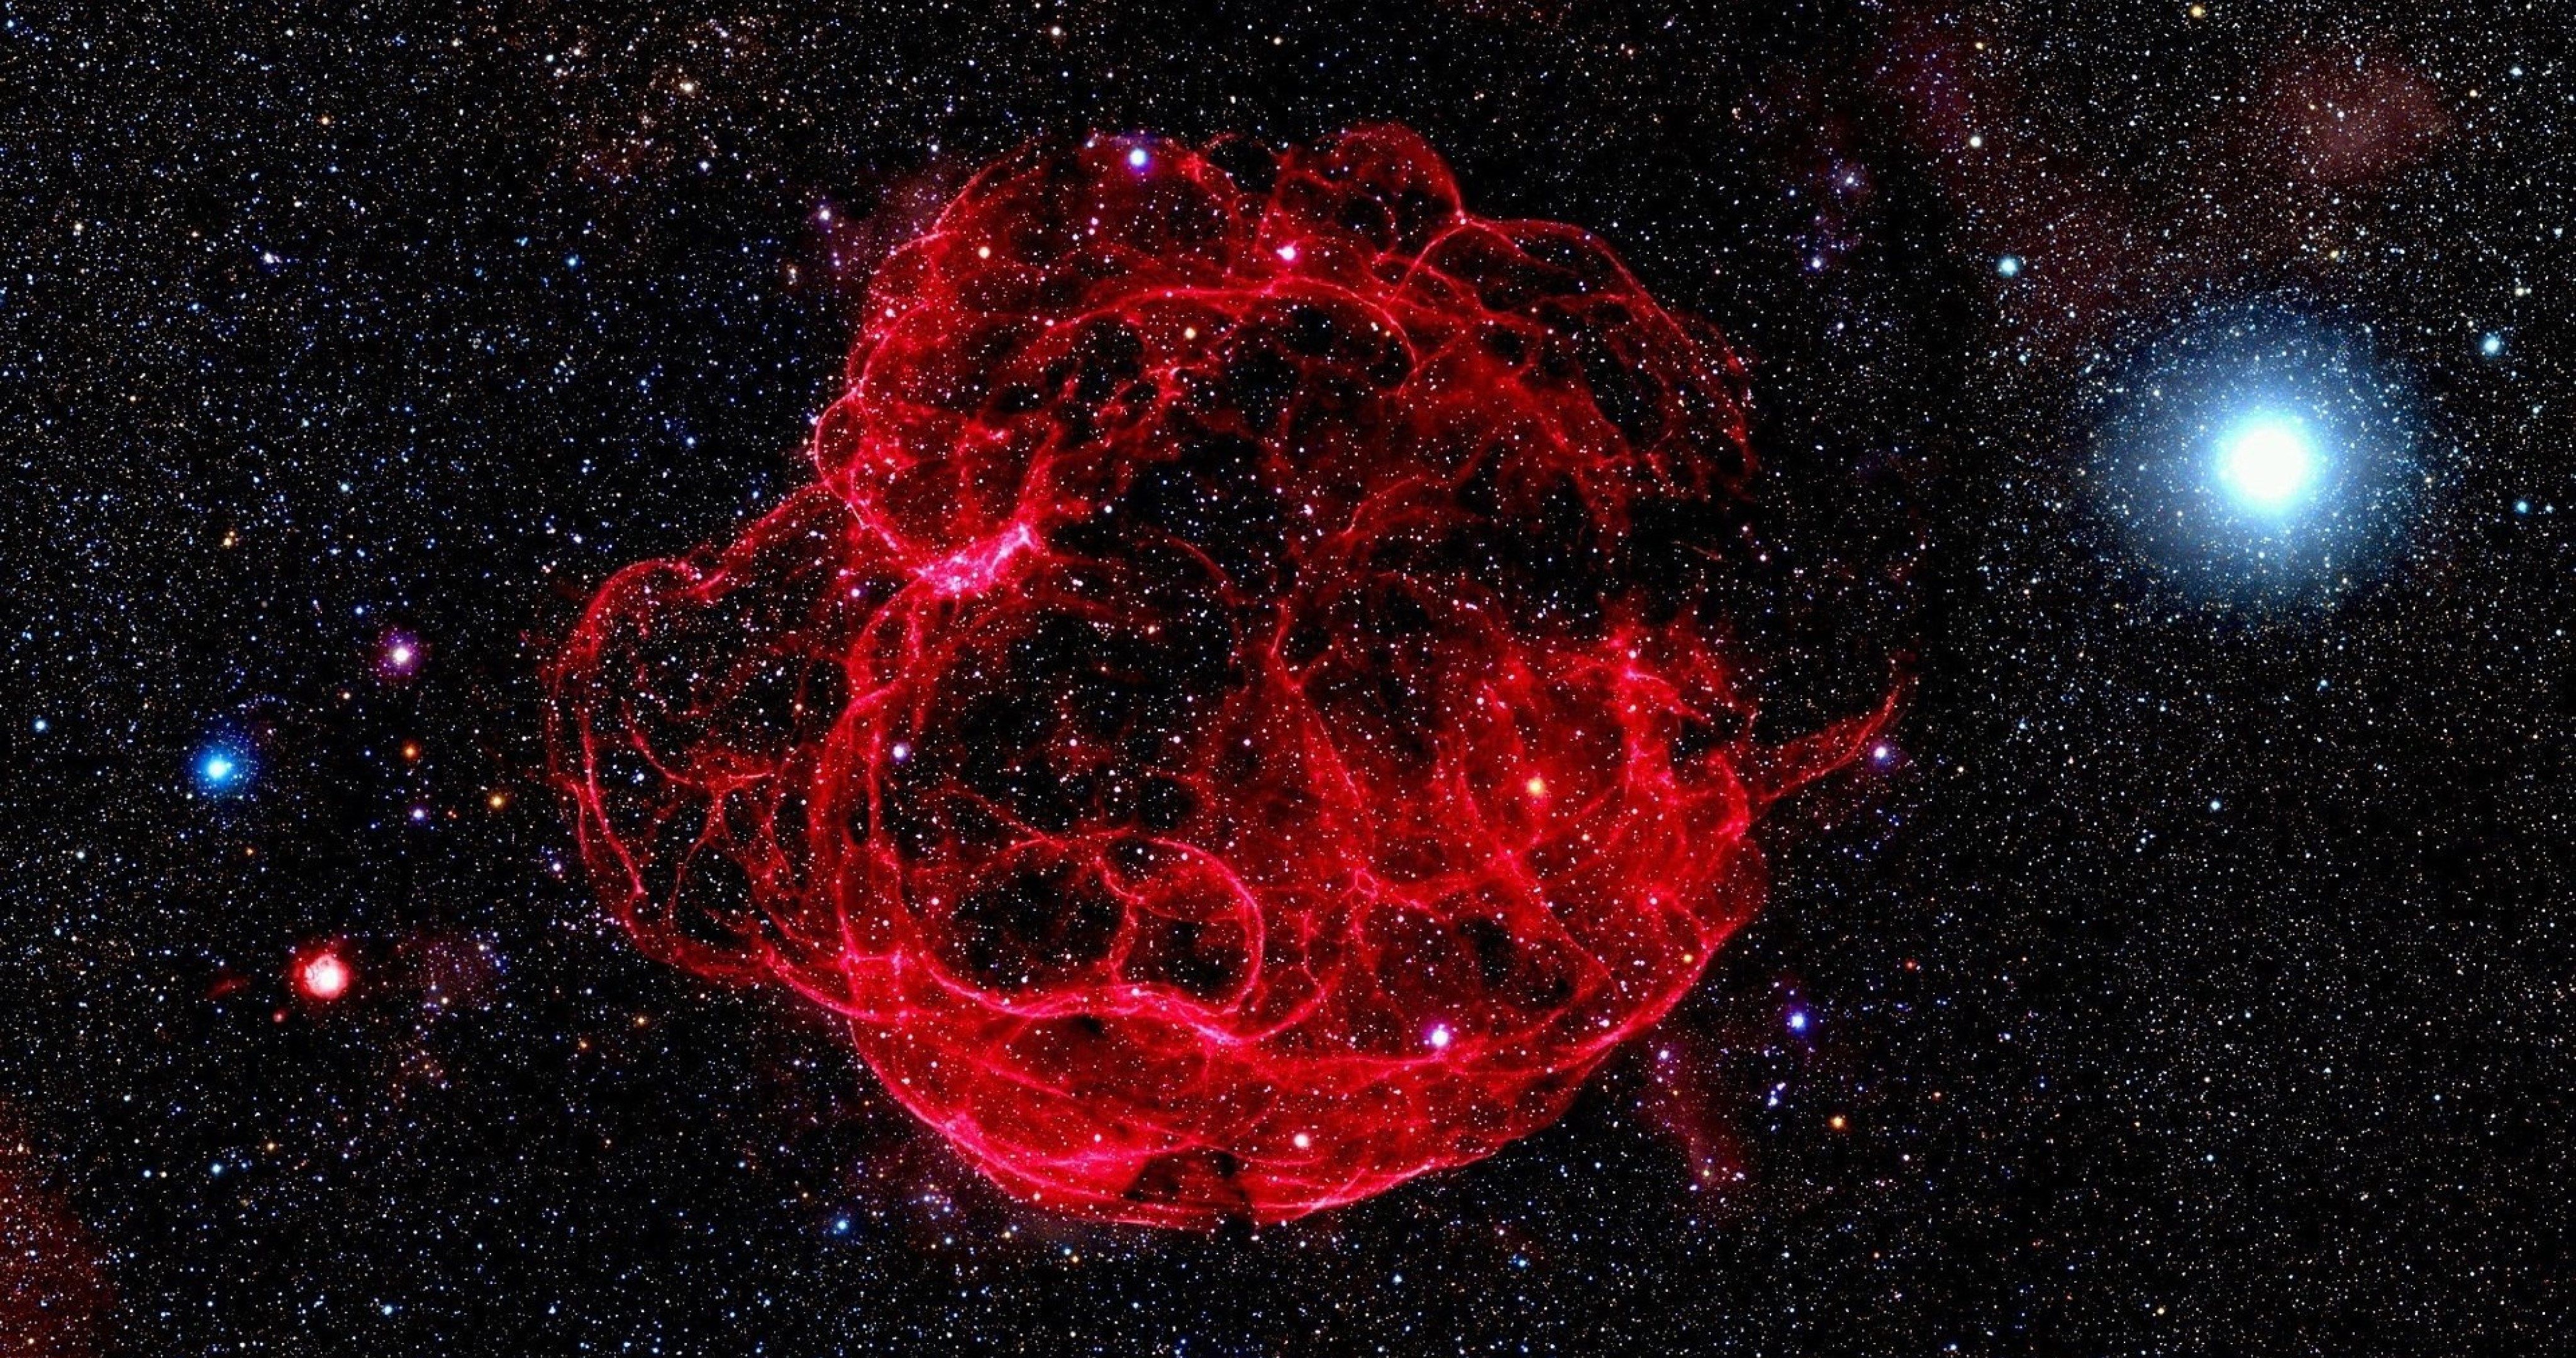 hd red nebula space 4k ultra HD wallpaper. Nebula wallpaper, Nebula, Astronomy photography